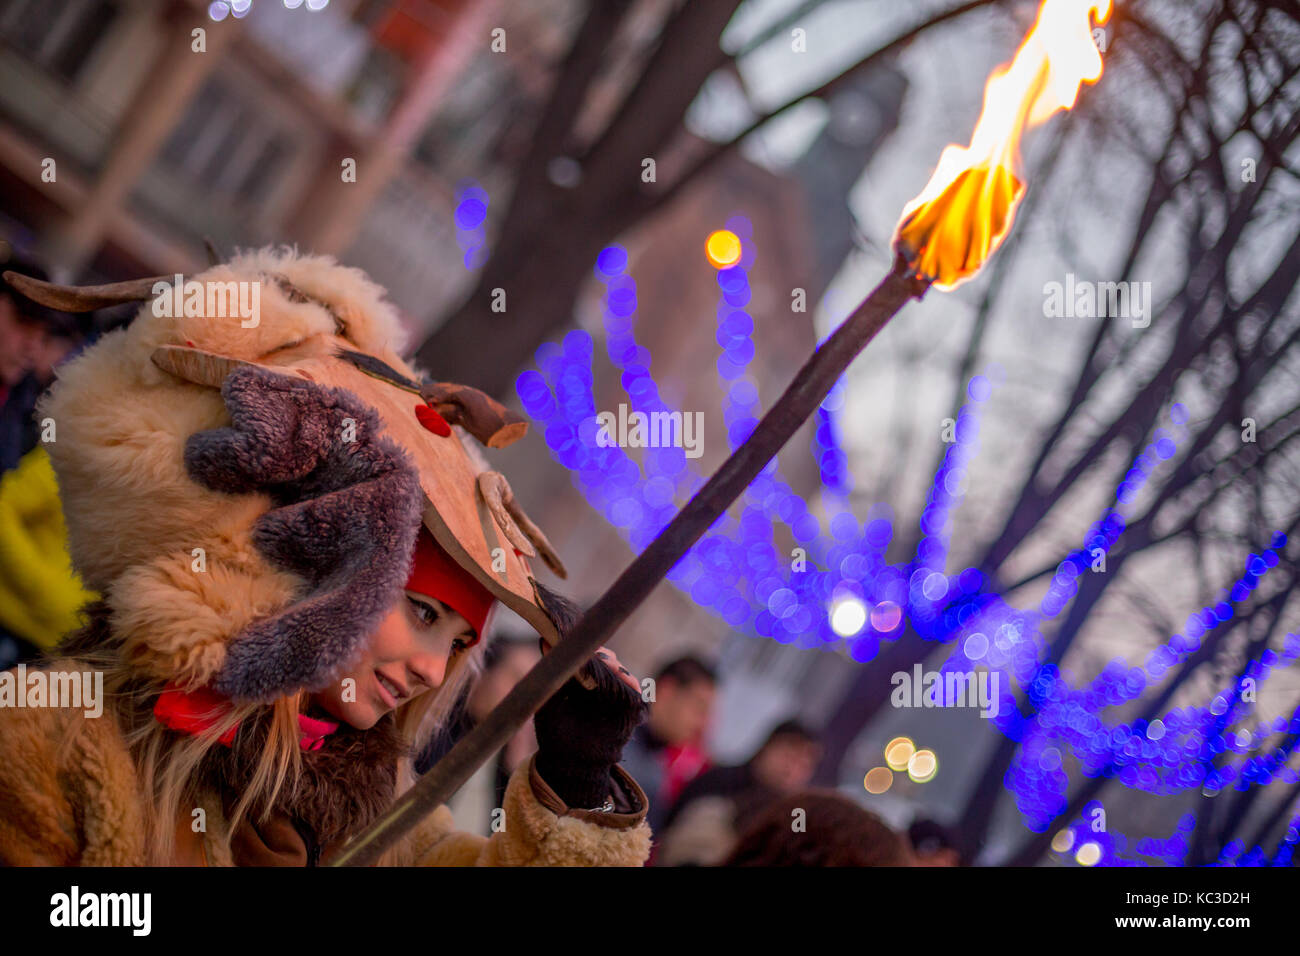 Pernik, Bulgarien - Januar 27, 2017: wunderschöne Mädchen sucht unter Ihrem scary Maske und lächelnd, während sie brennende Fackel an surva, der Internat Stockfoto